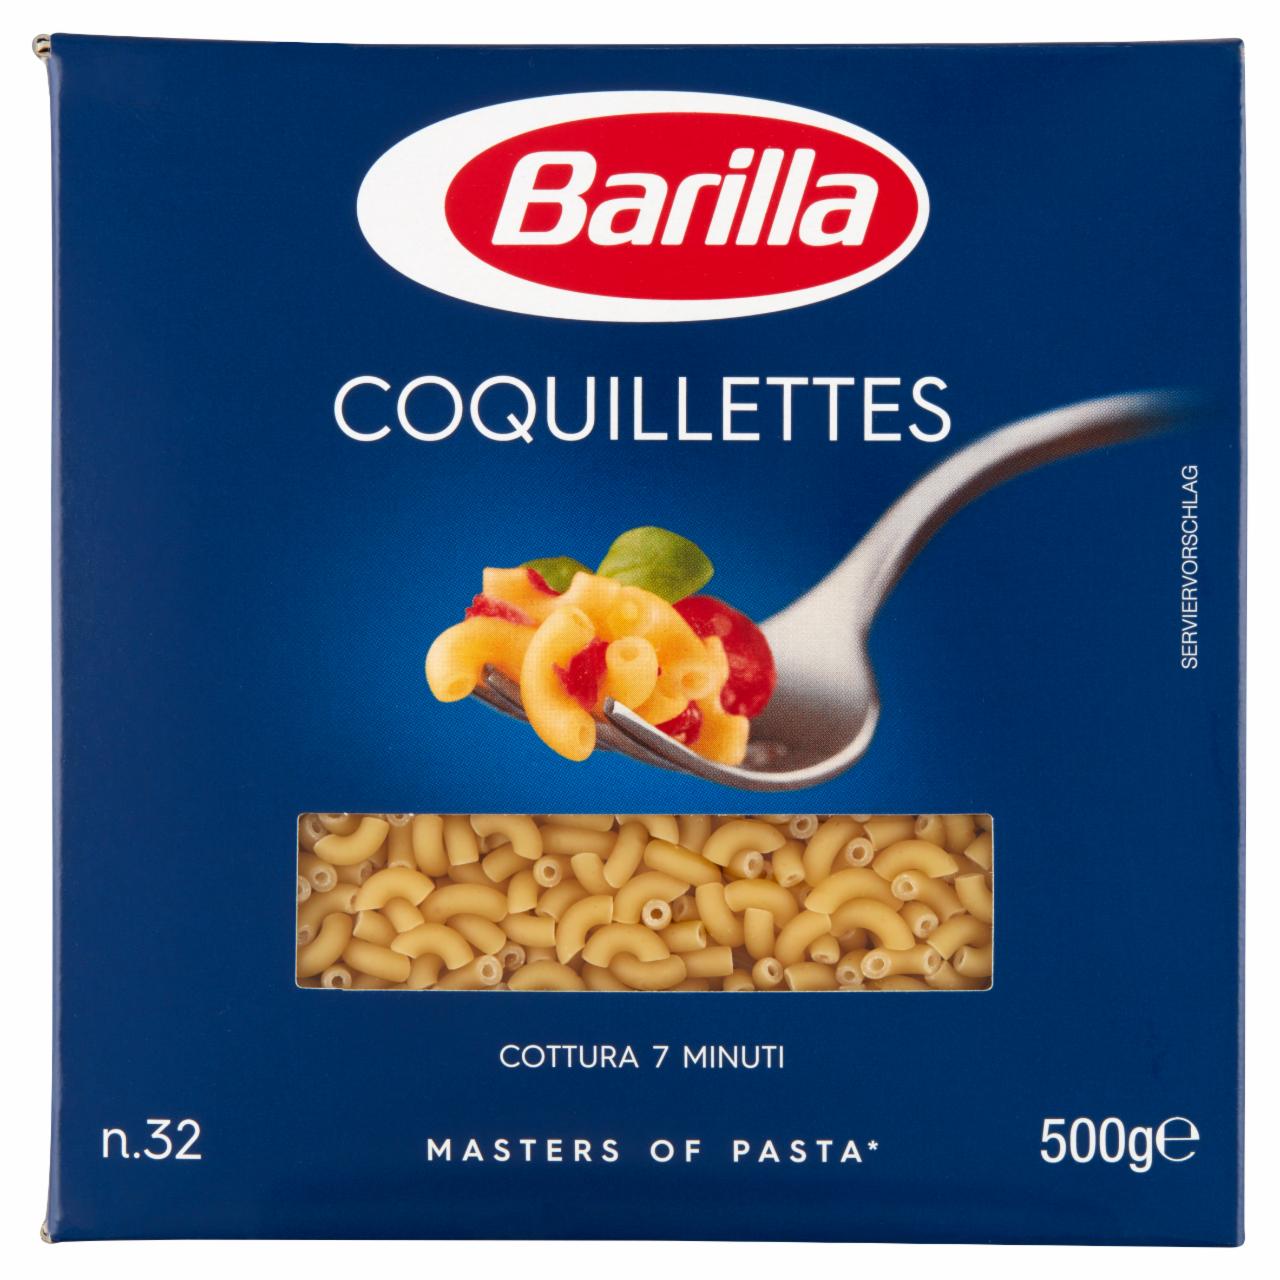 Képek - Barilla Coquillettes apró durum száraztészta 500 g